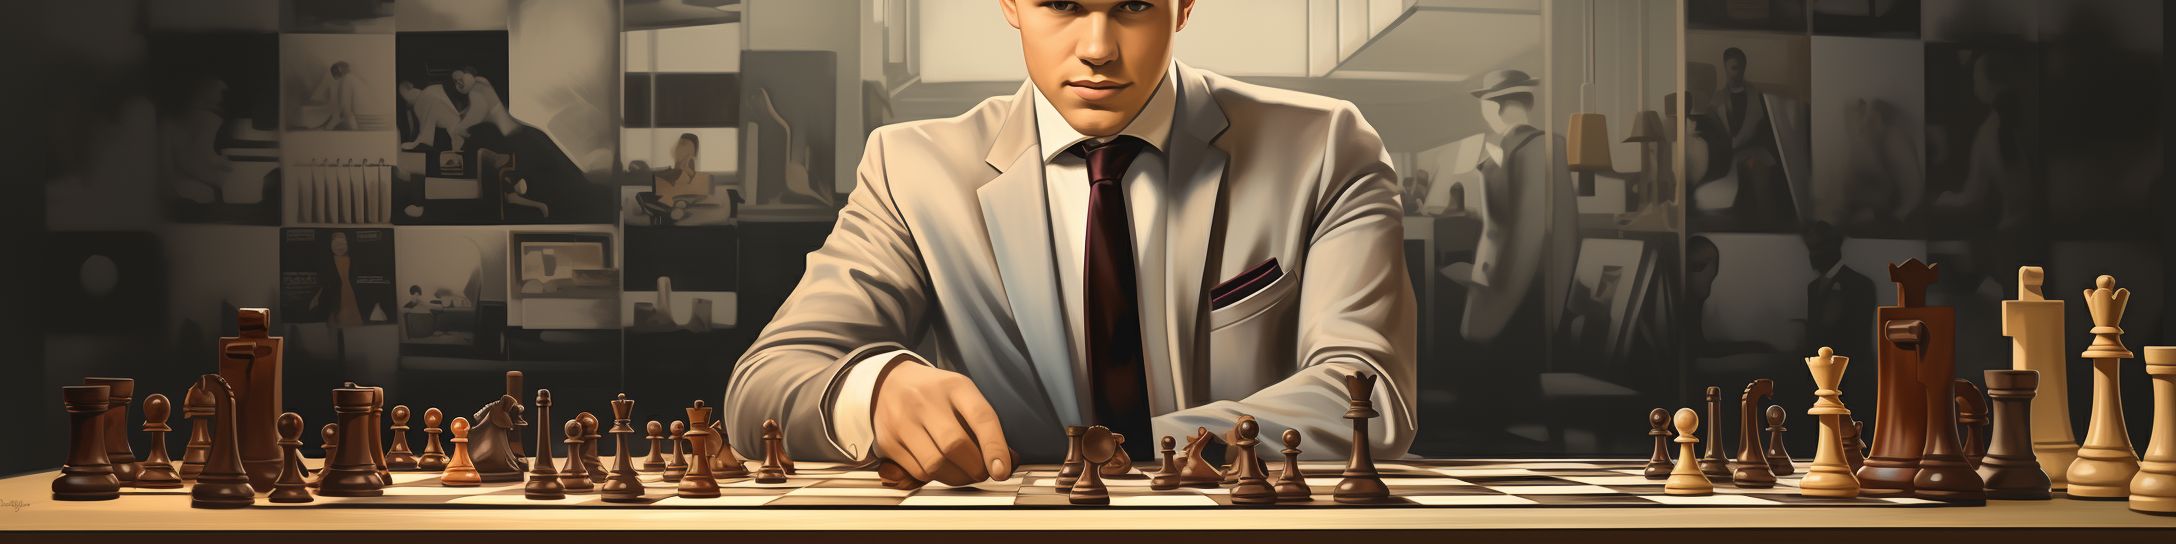 Les exploits et accomplissements de Magnus Carlsen